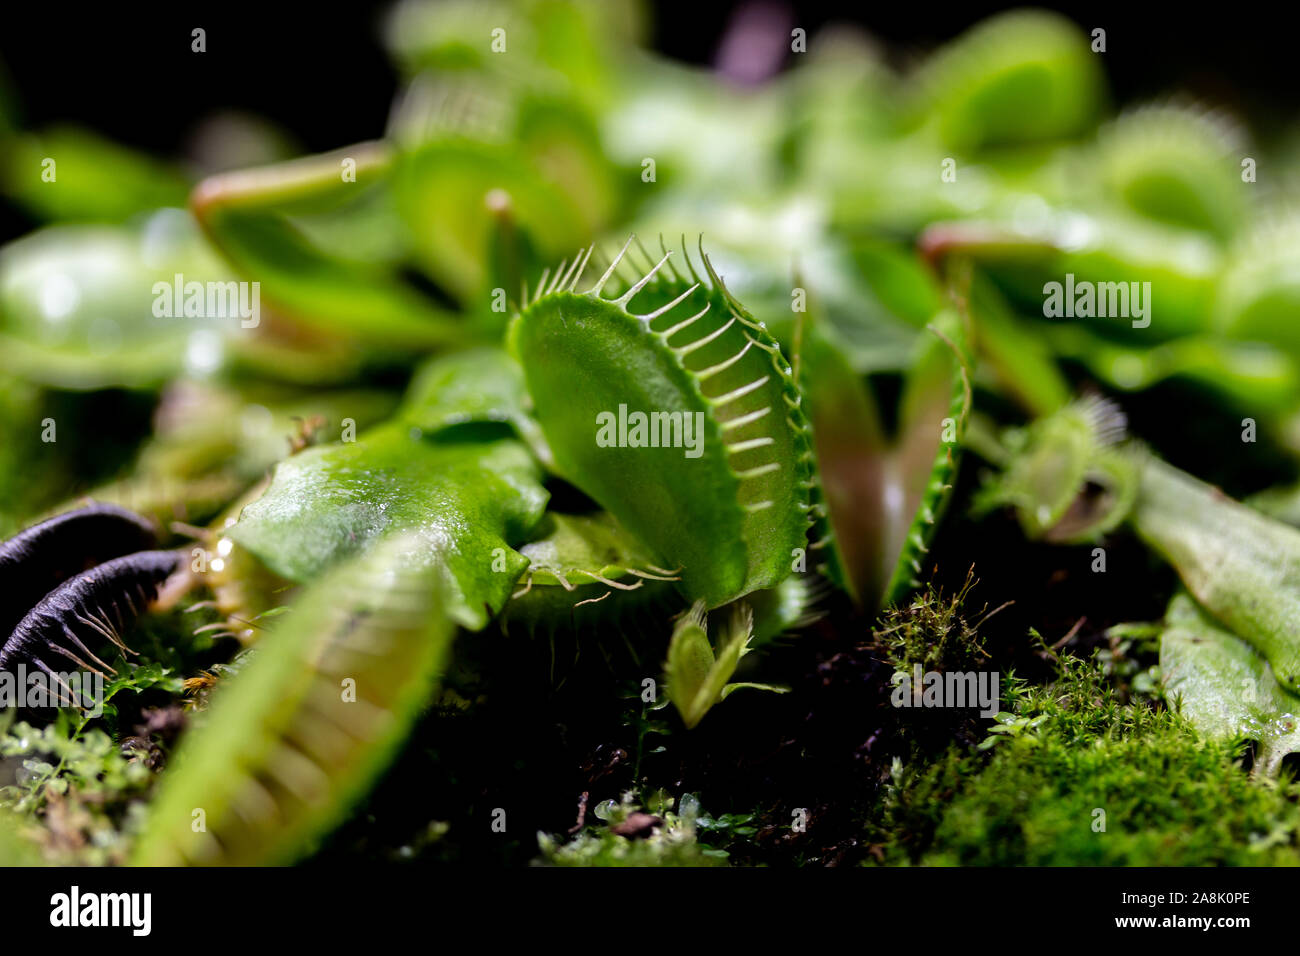 La pianta di predatori Dionaea muscipula della famiglia Droseraceae, Venus flytrap. Anta trap con denti affilati. Un piccolo impianto sottodimensionato in paludoso Foto Stock